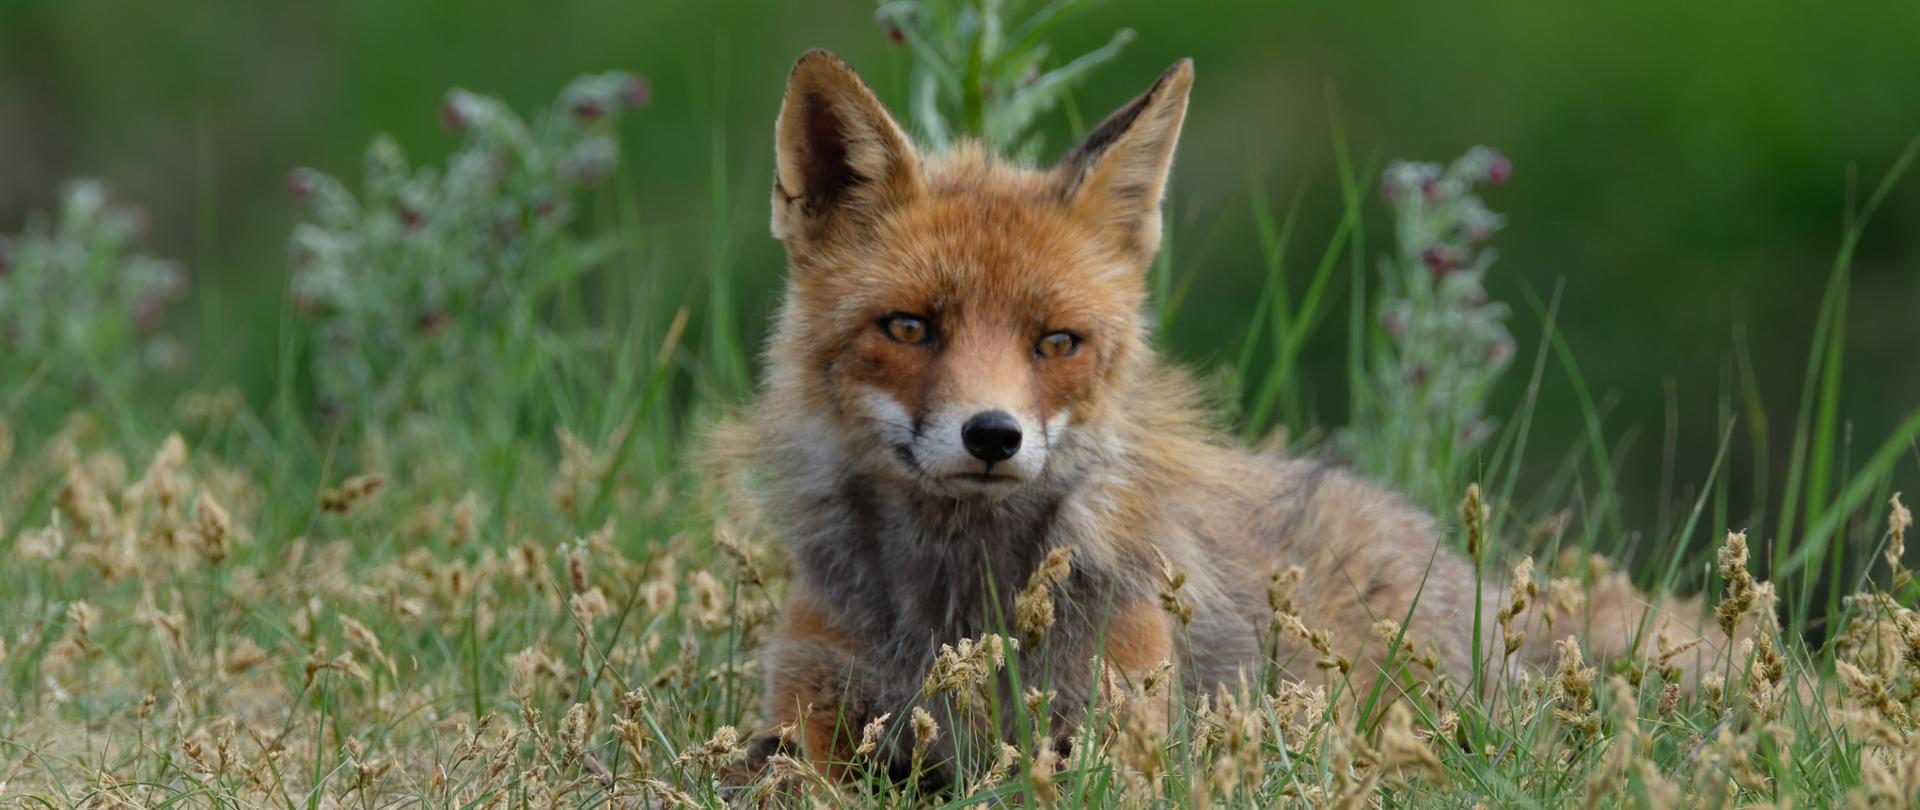 Zdjęcie ilustrujące dzikiego lisa. Zdjęcie do artykułu o kolejnym przypadku wścieklizny w województwie mazowieckim